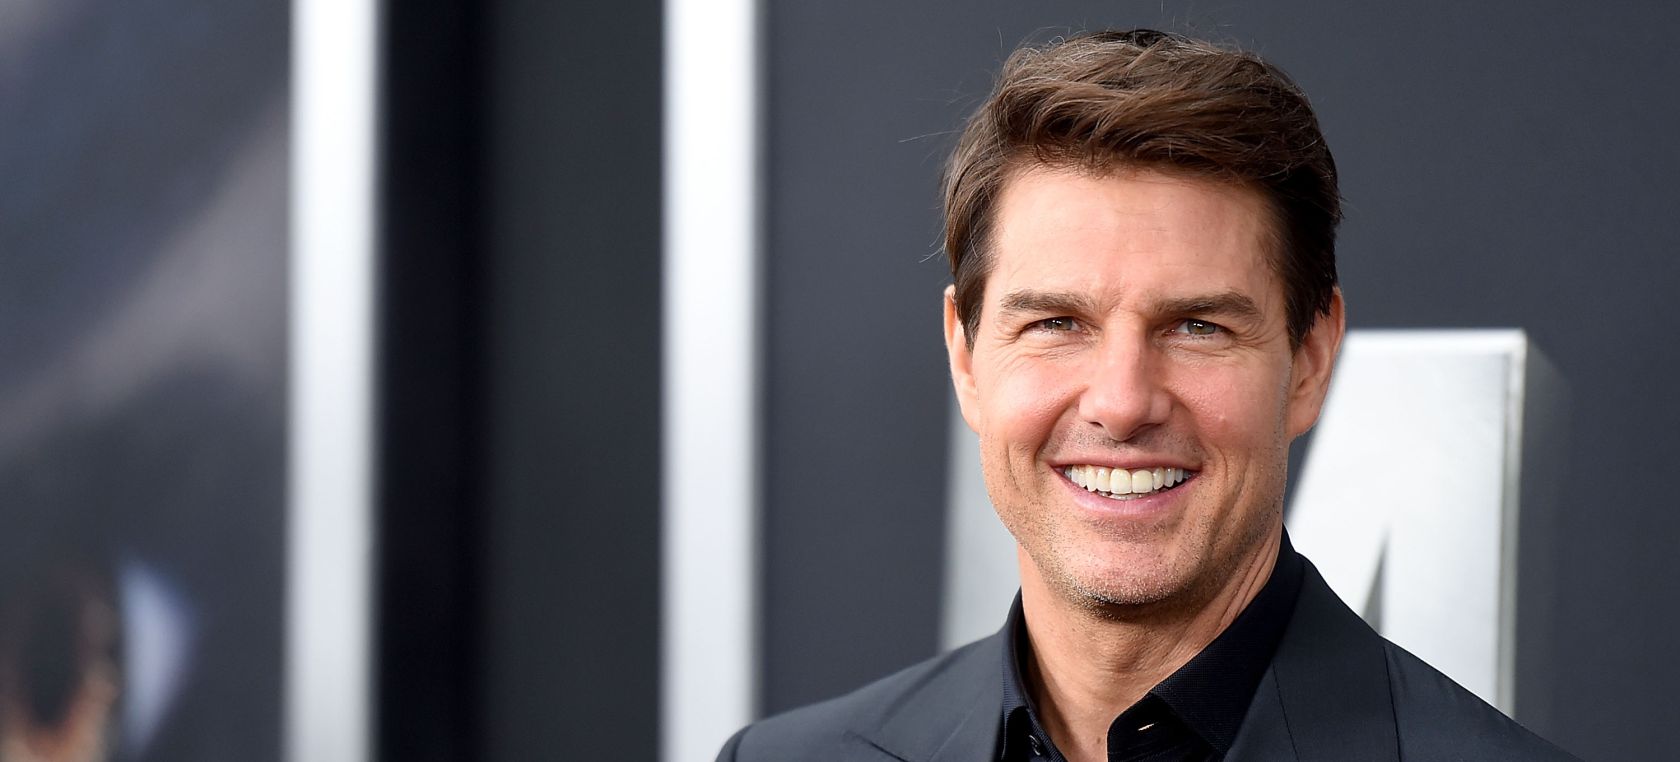 Tom Cruise aparece irreconocible y sus fans no dan crédito: “¿Qué se ha hecho en la cara?”